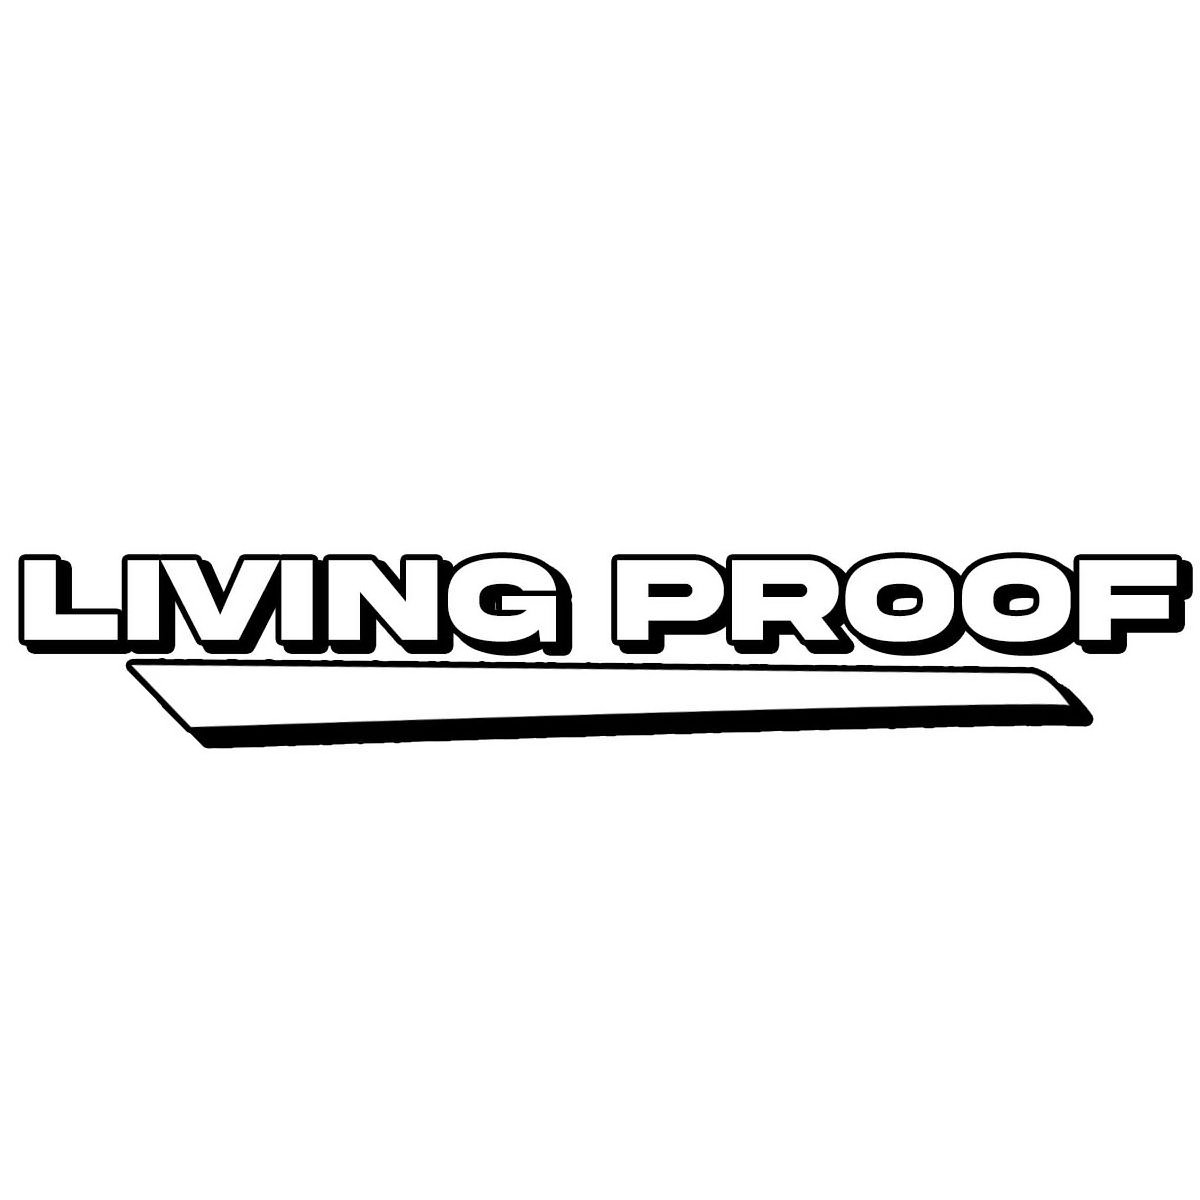  LIVING PROOF